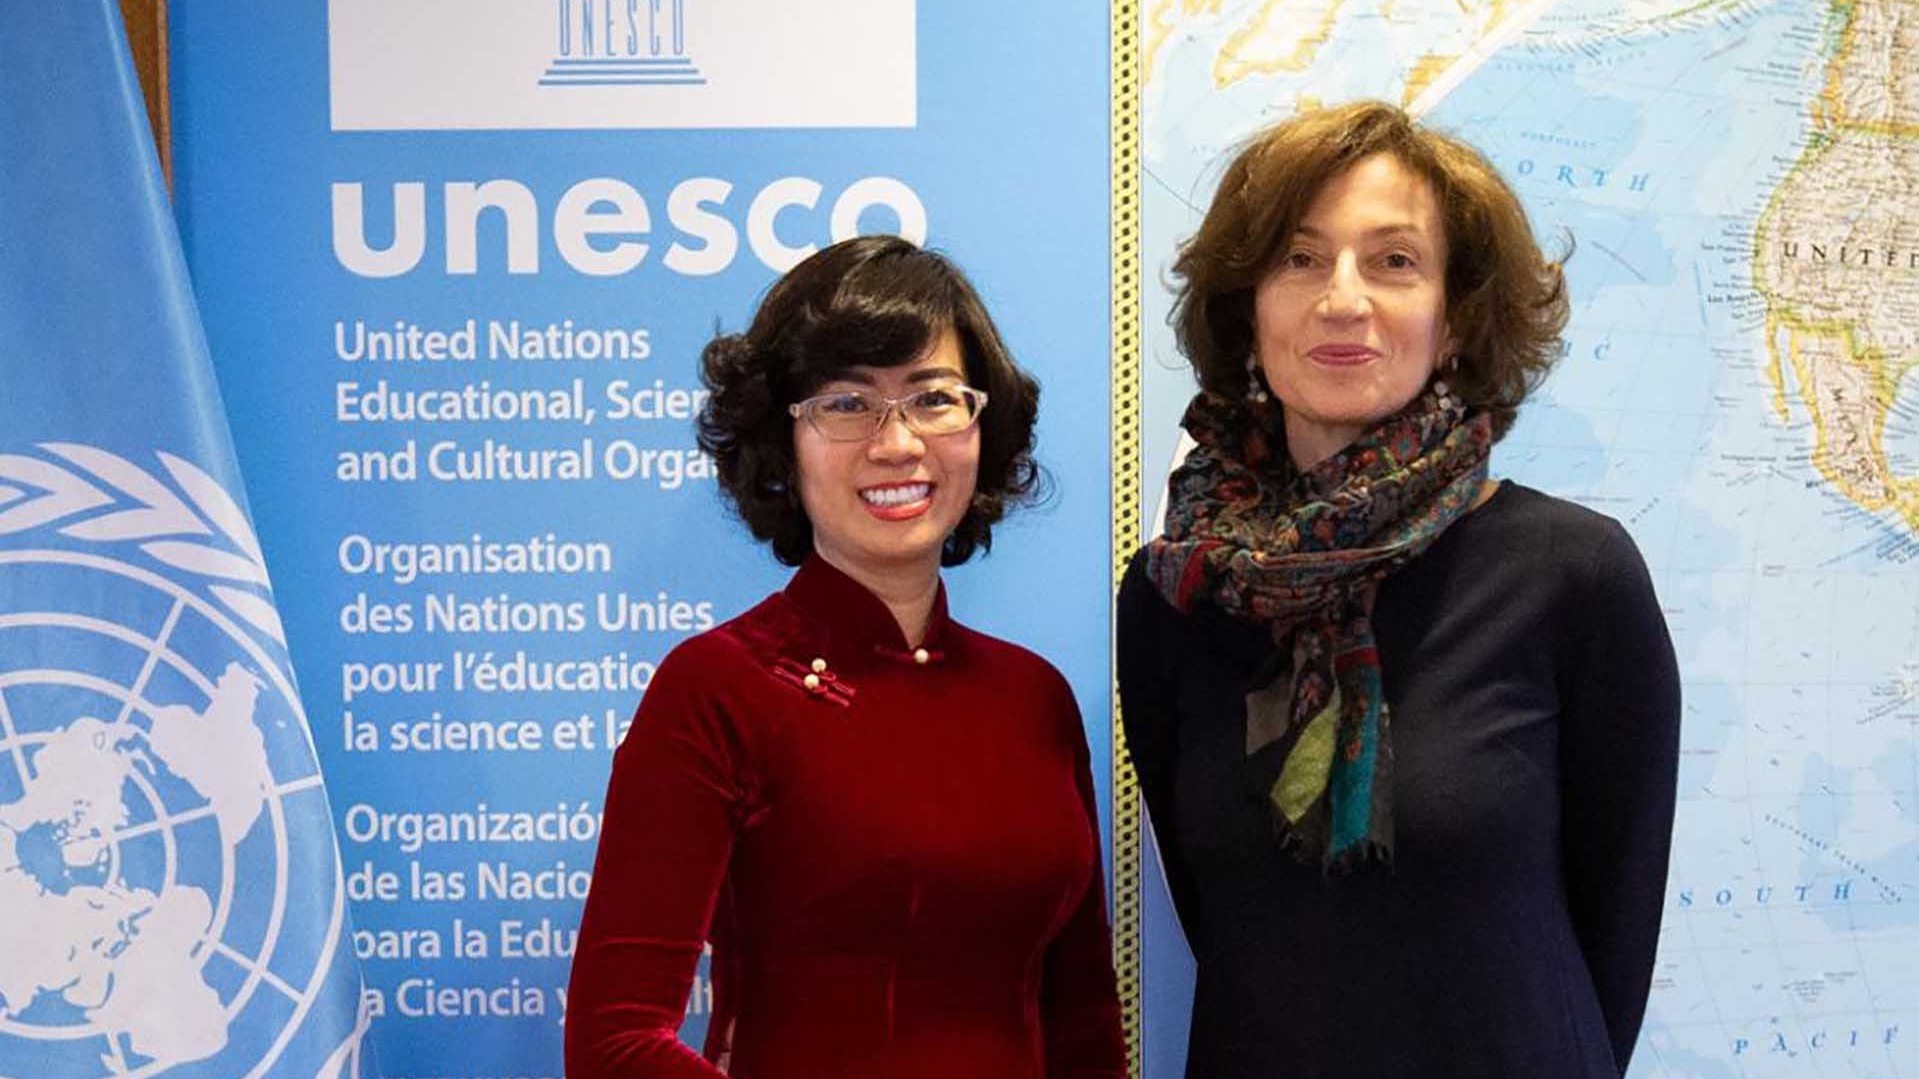 Đại sứ Lê Thị Hồng Vân chào từ biệt Tổng giám đốc UNESCO Audrey Azoulay